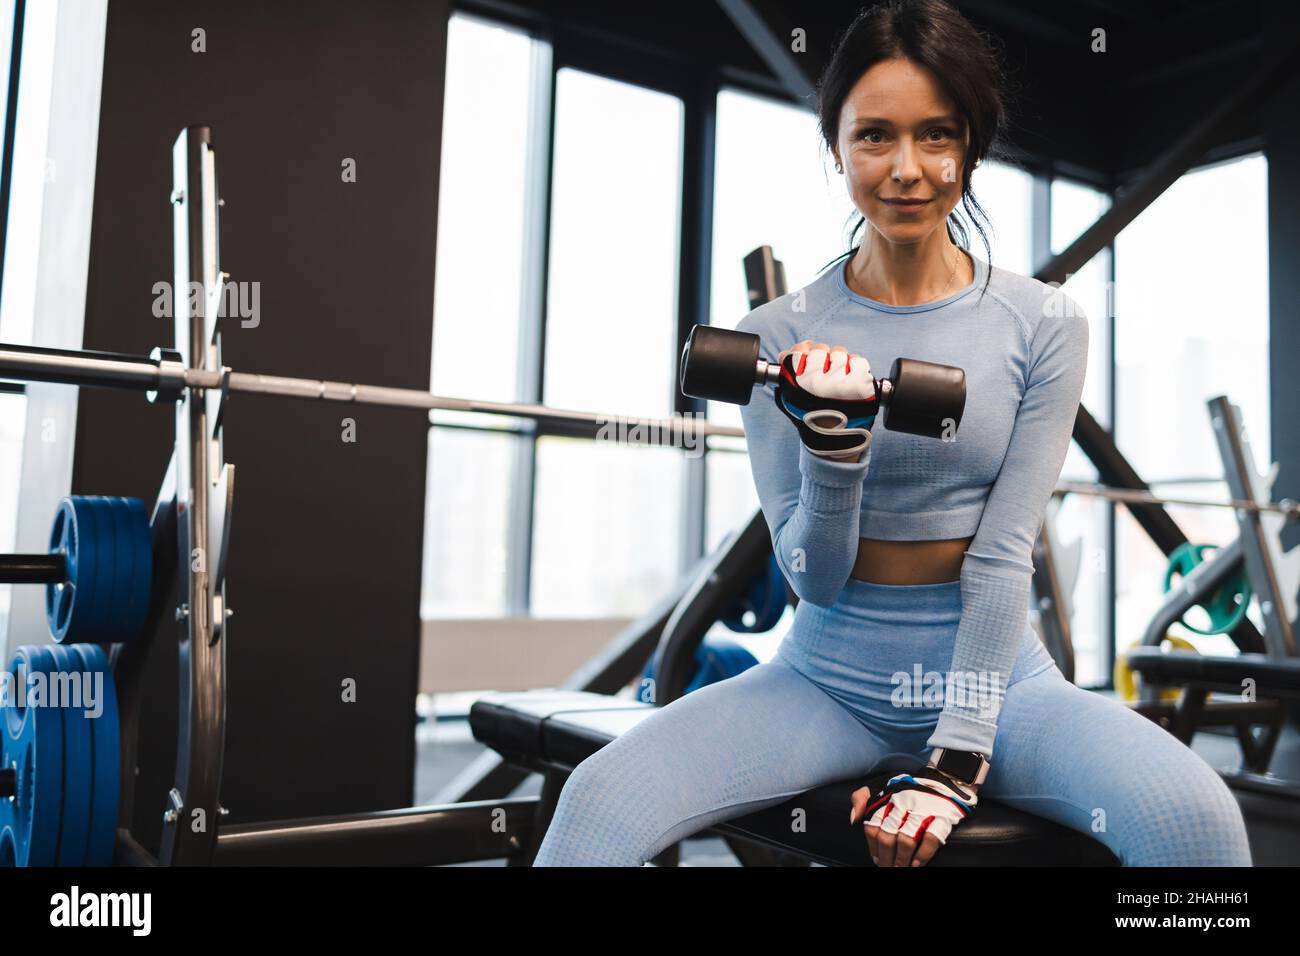 Une femme secoue des biceps levant une haltère tout en étant assise sur un banc dans la salle de gym Banque D'Images